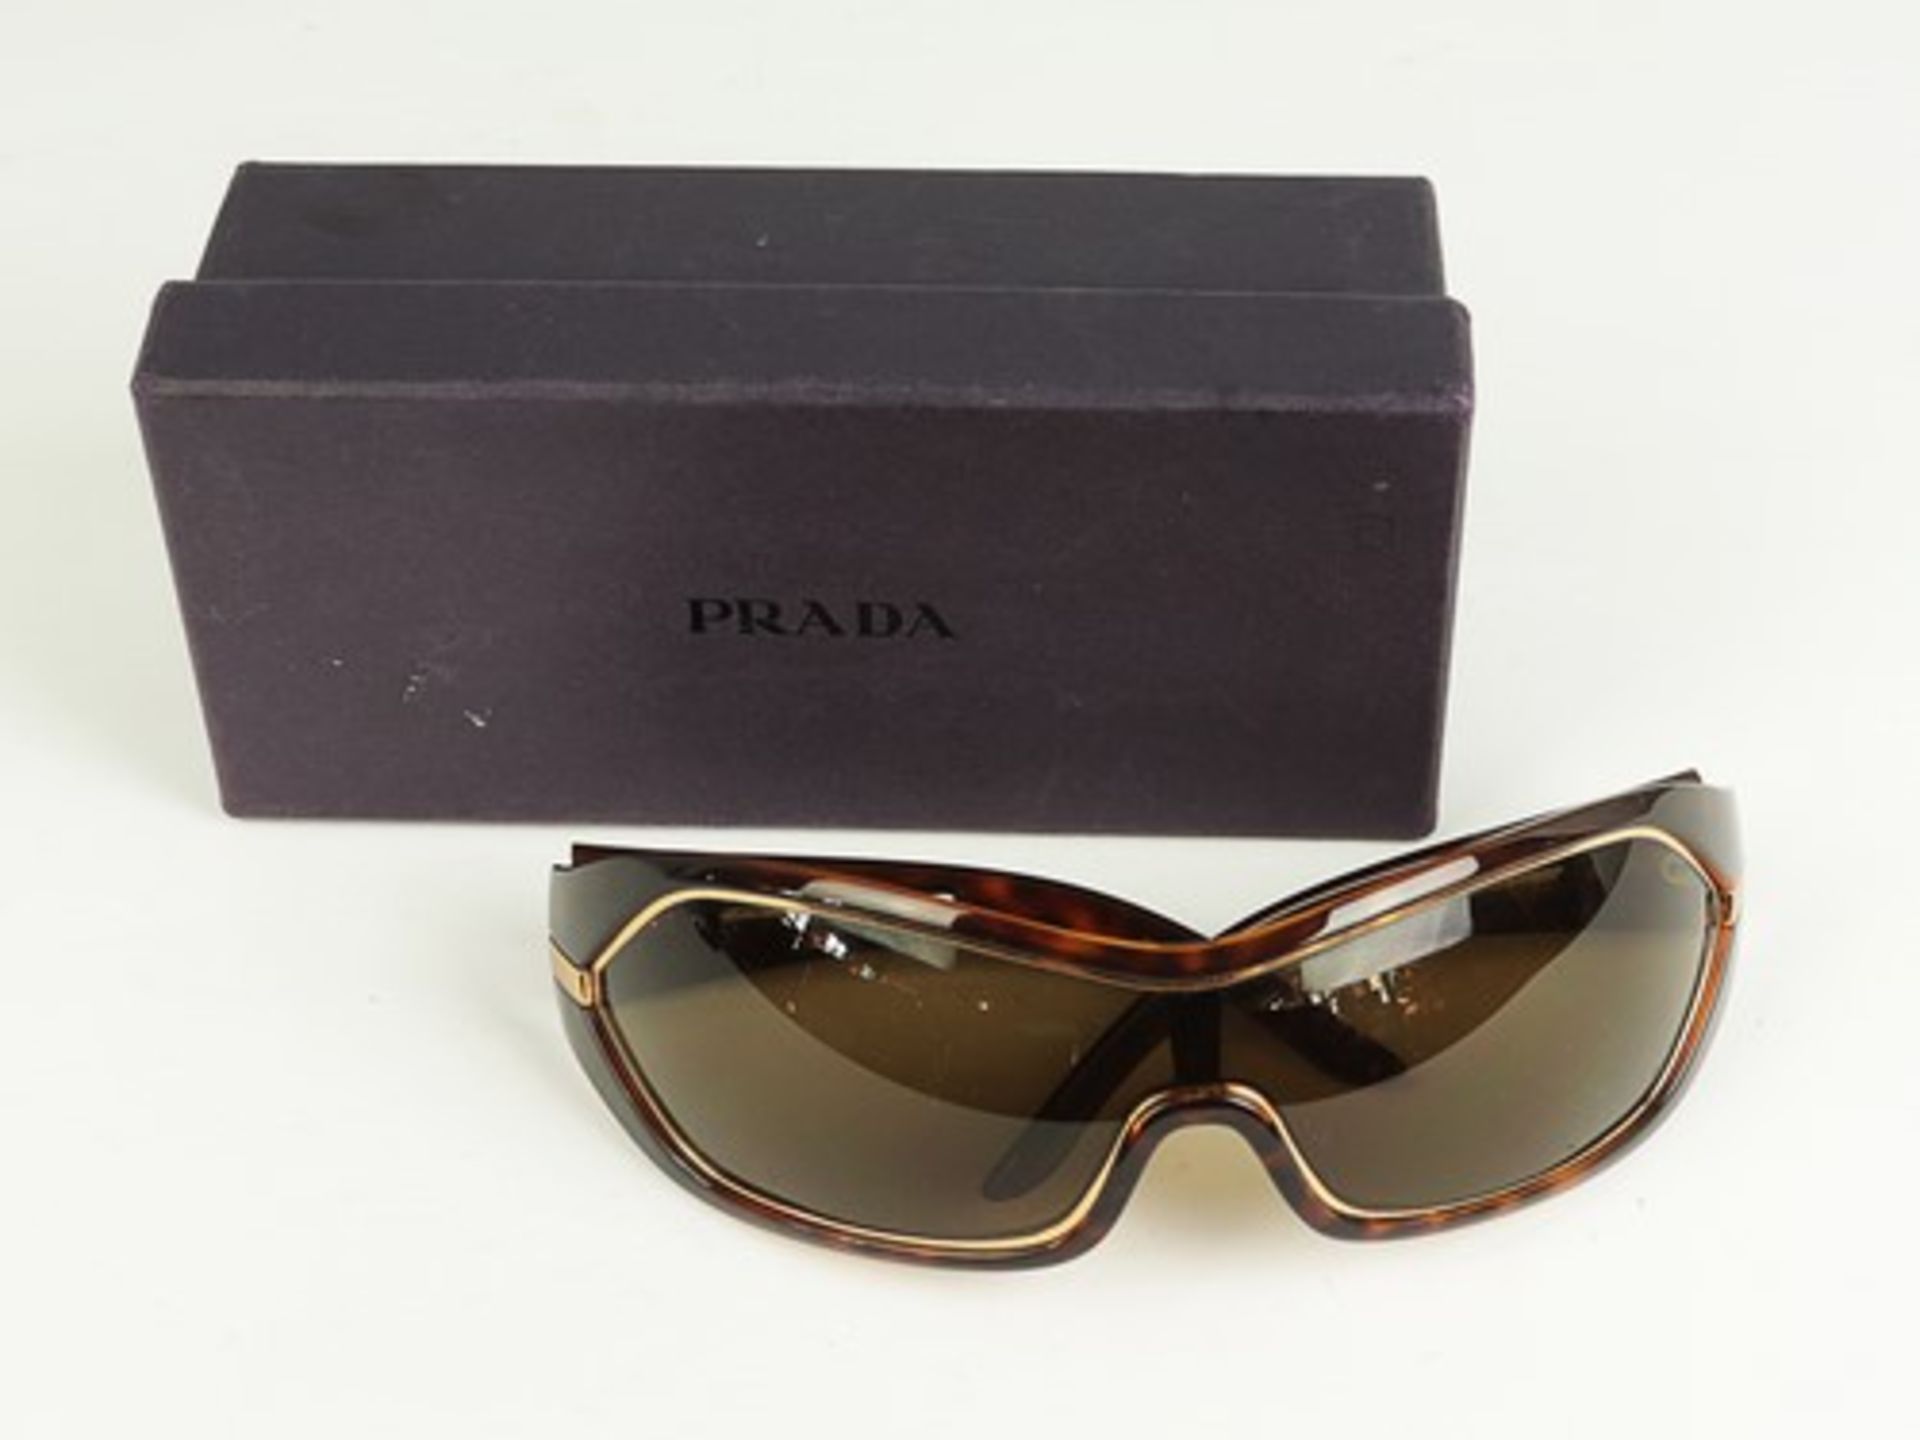 Prada - Sonnenbrilleschildpattfarbener Kunststoff, goldfarbene Zierleiste, verbundene gebogene